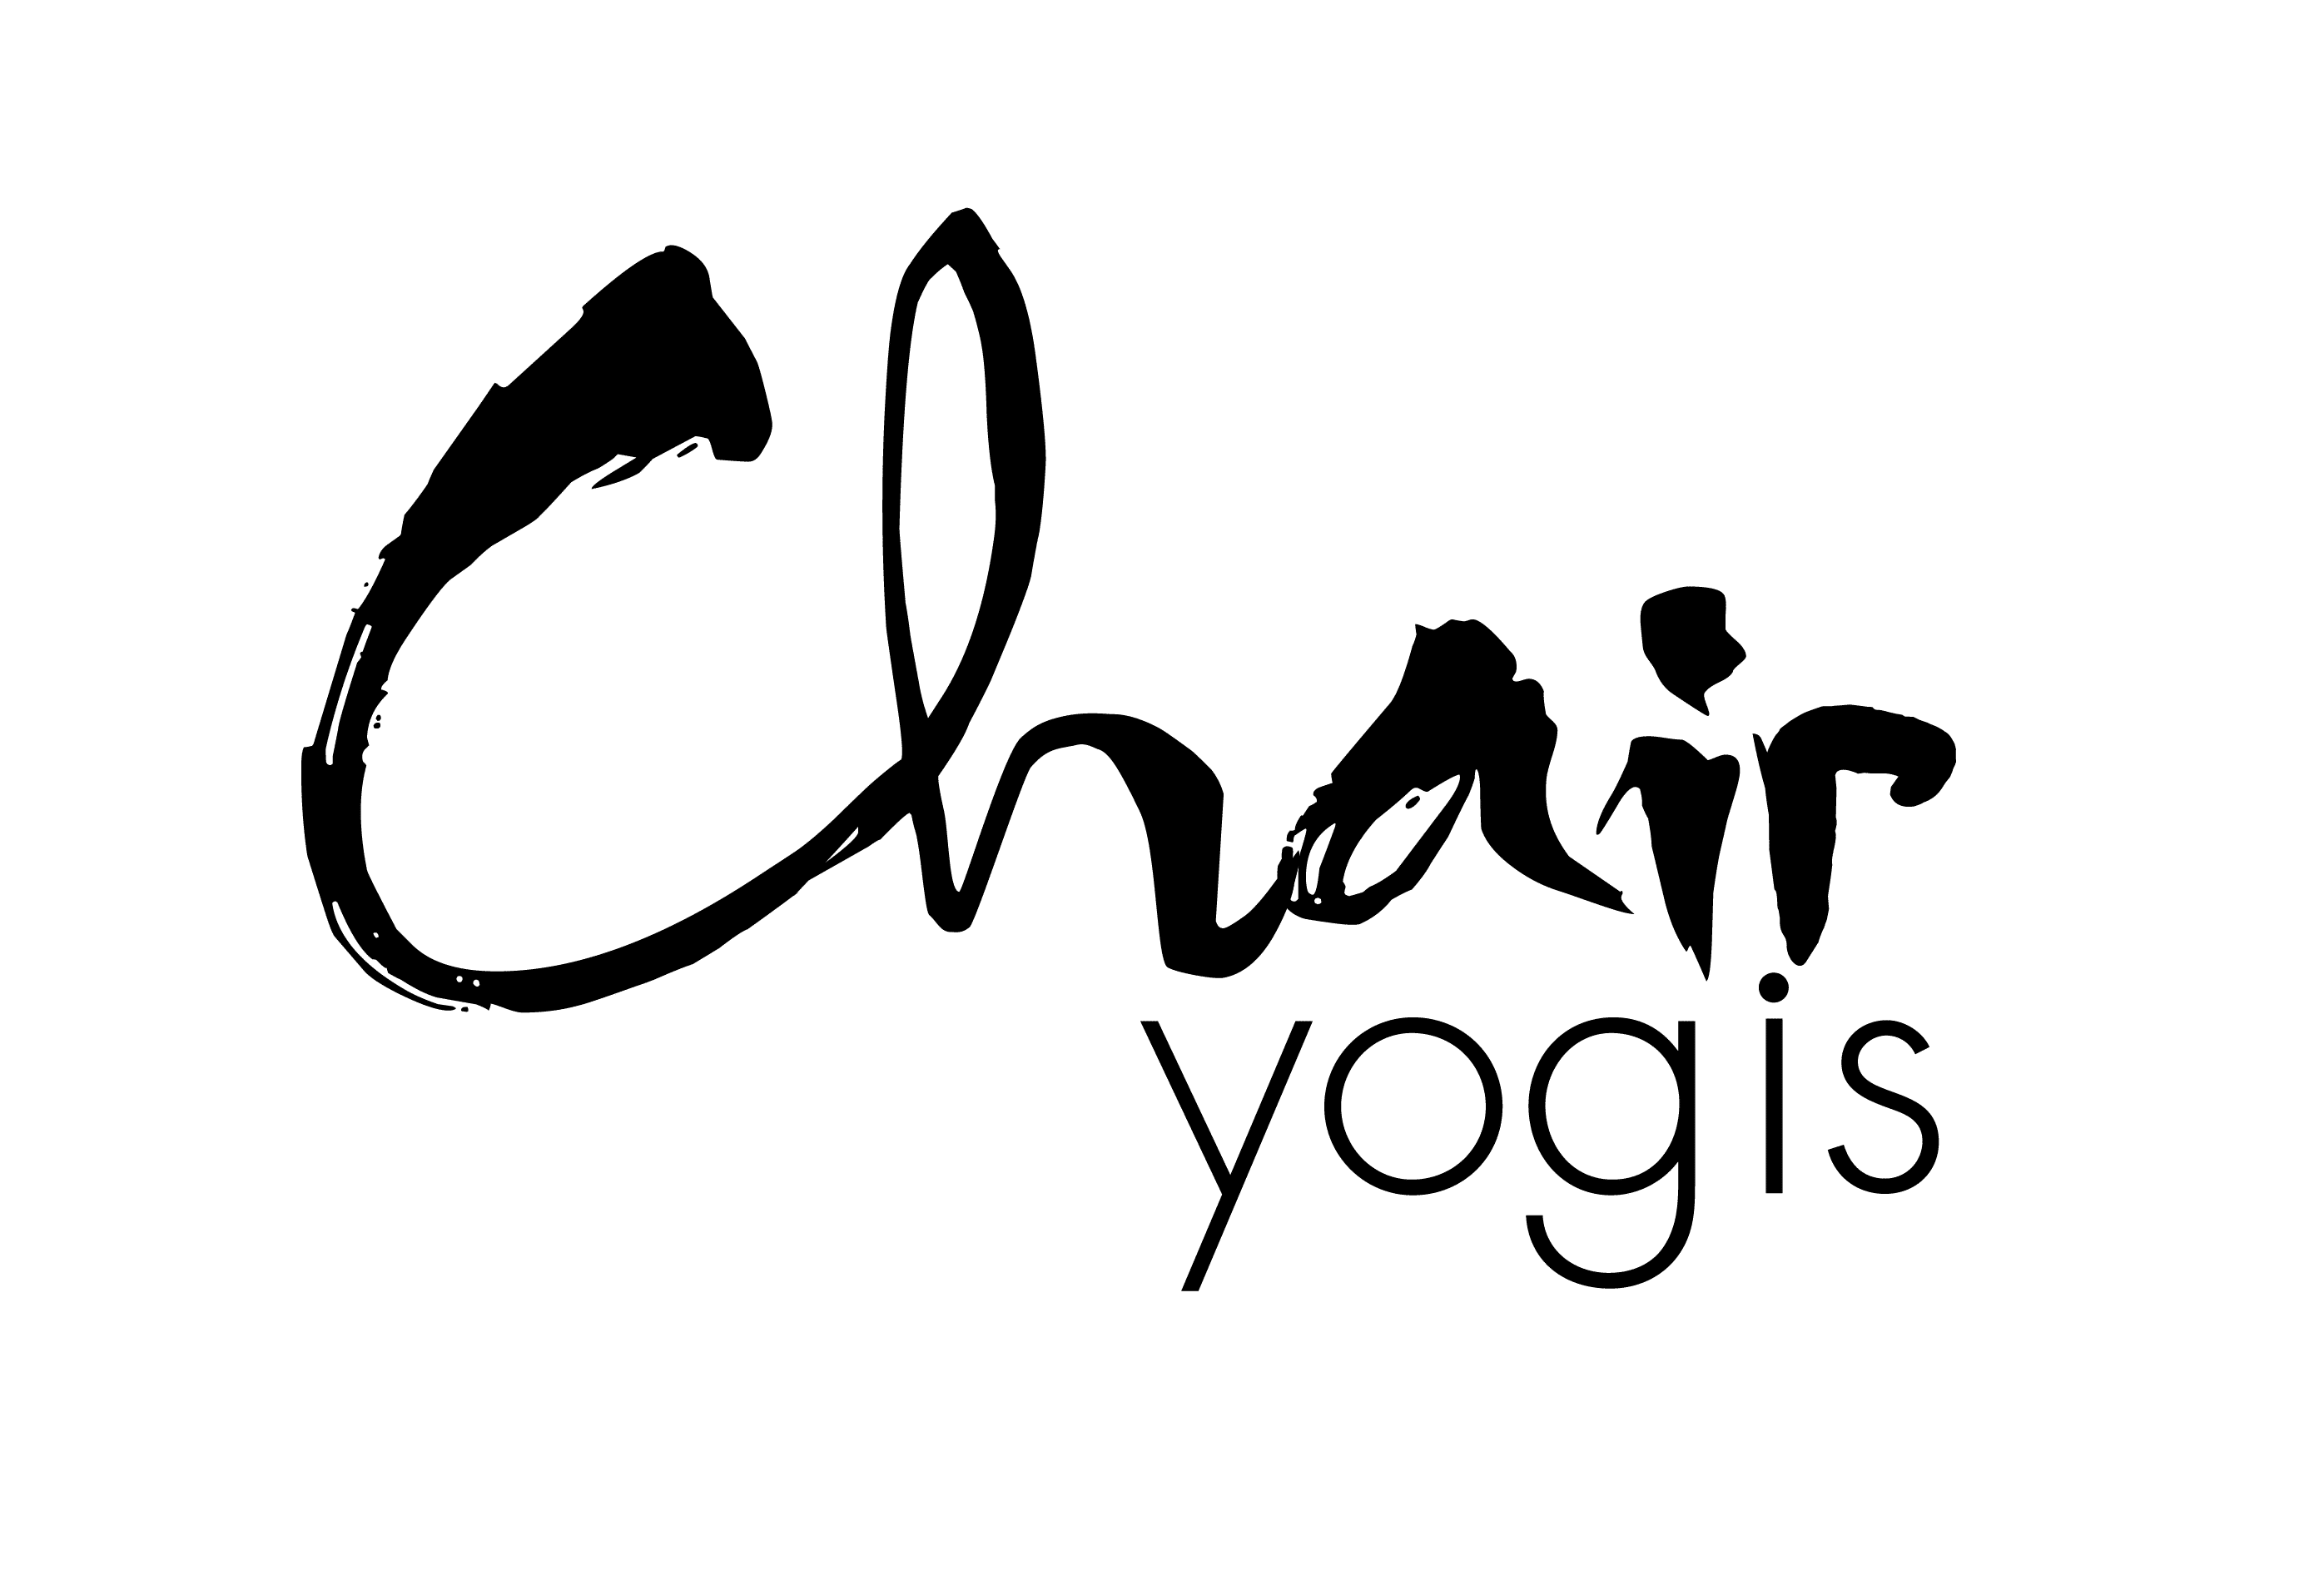 Chair_yogis_Mono